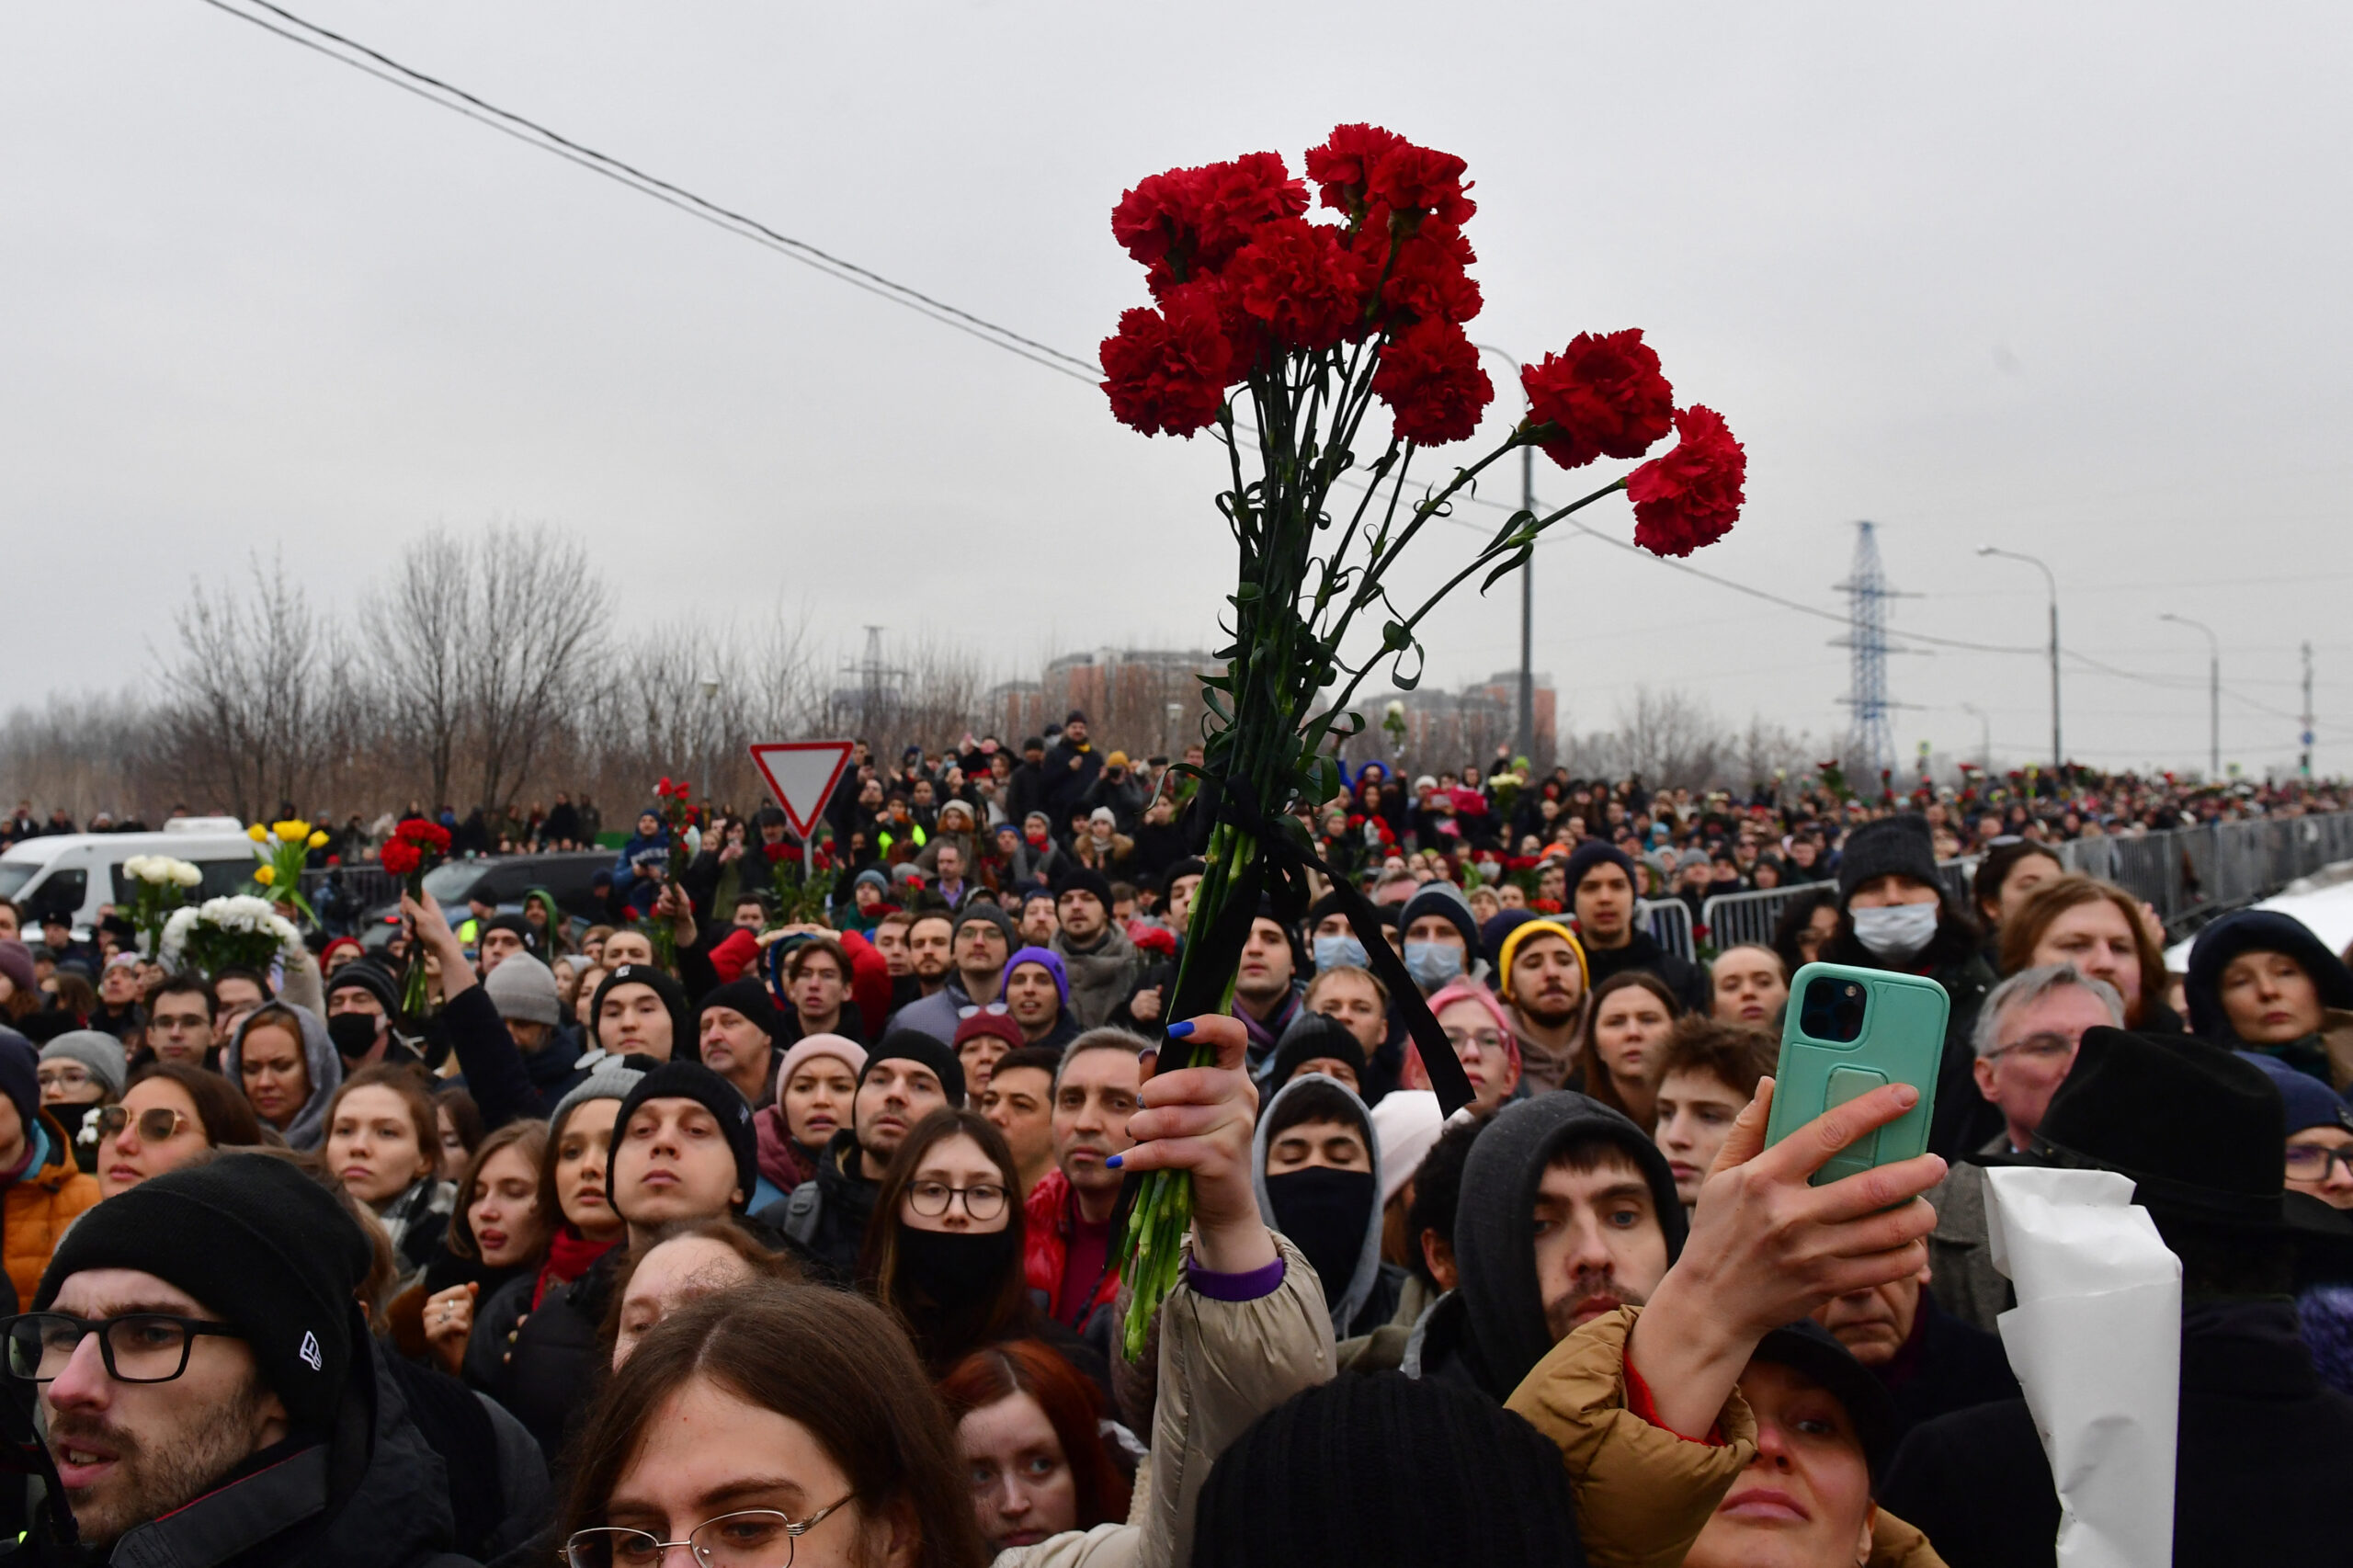 Hàng ngàn người tụ họp tiễn đưa nhà lãnh đạo phe đối lập Navalny ở Moscow